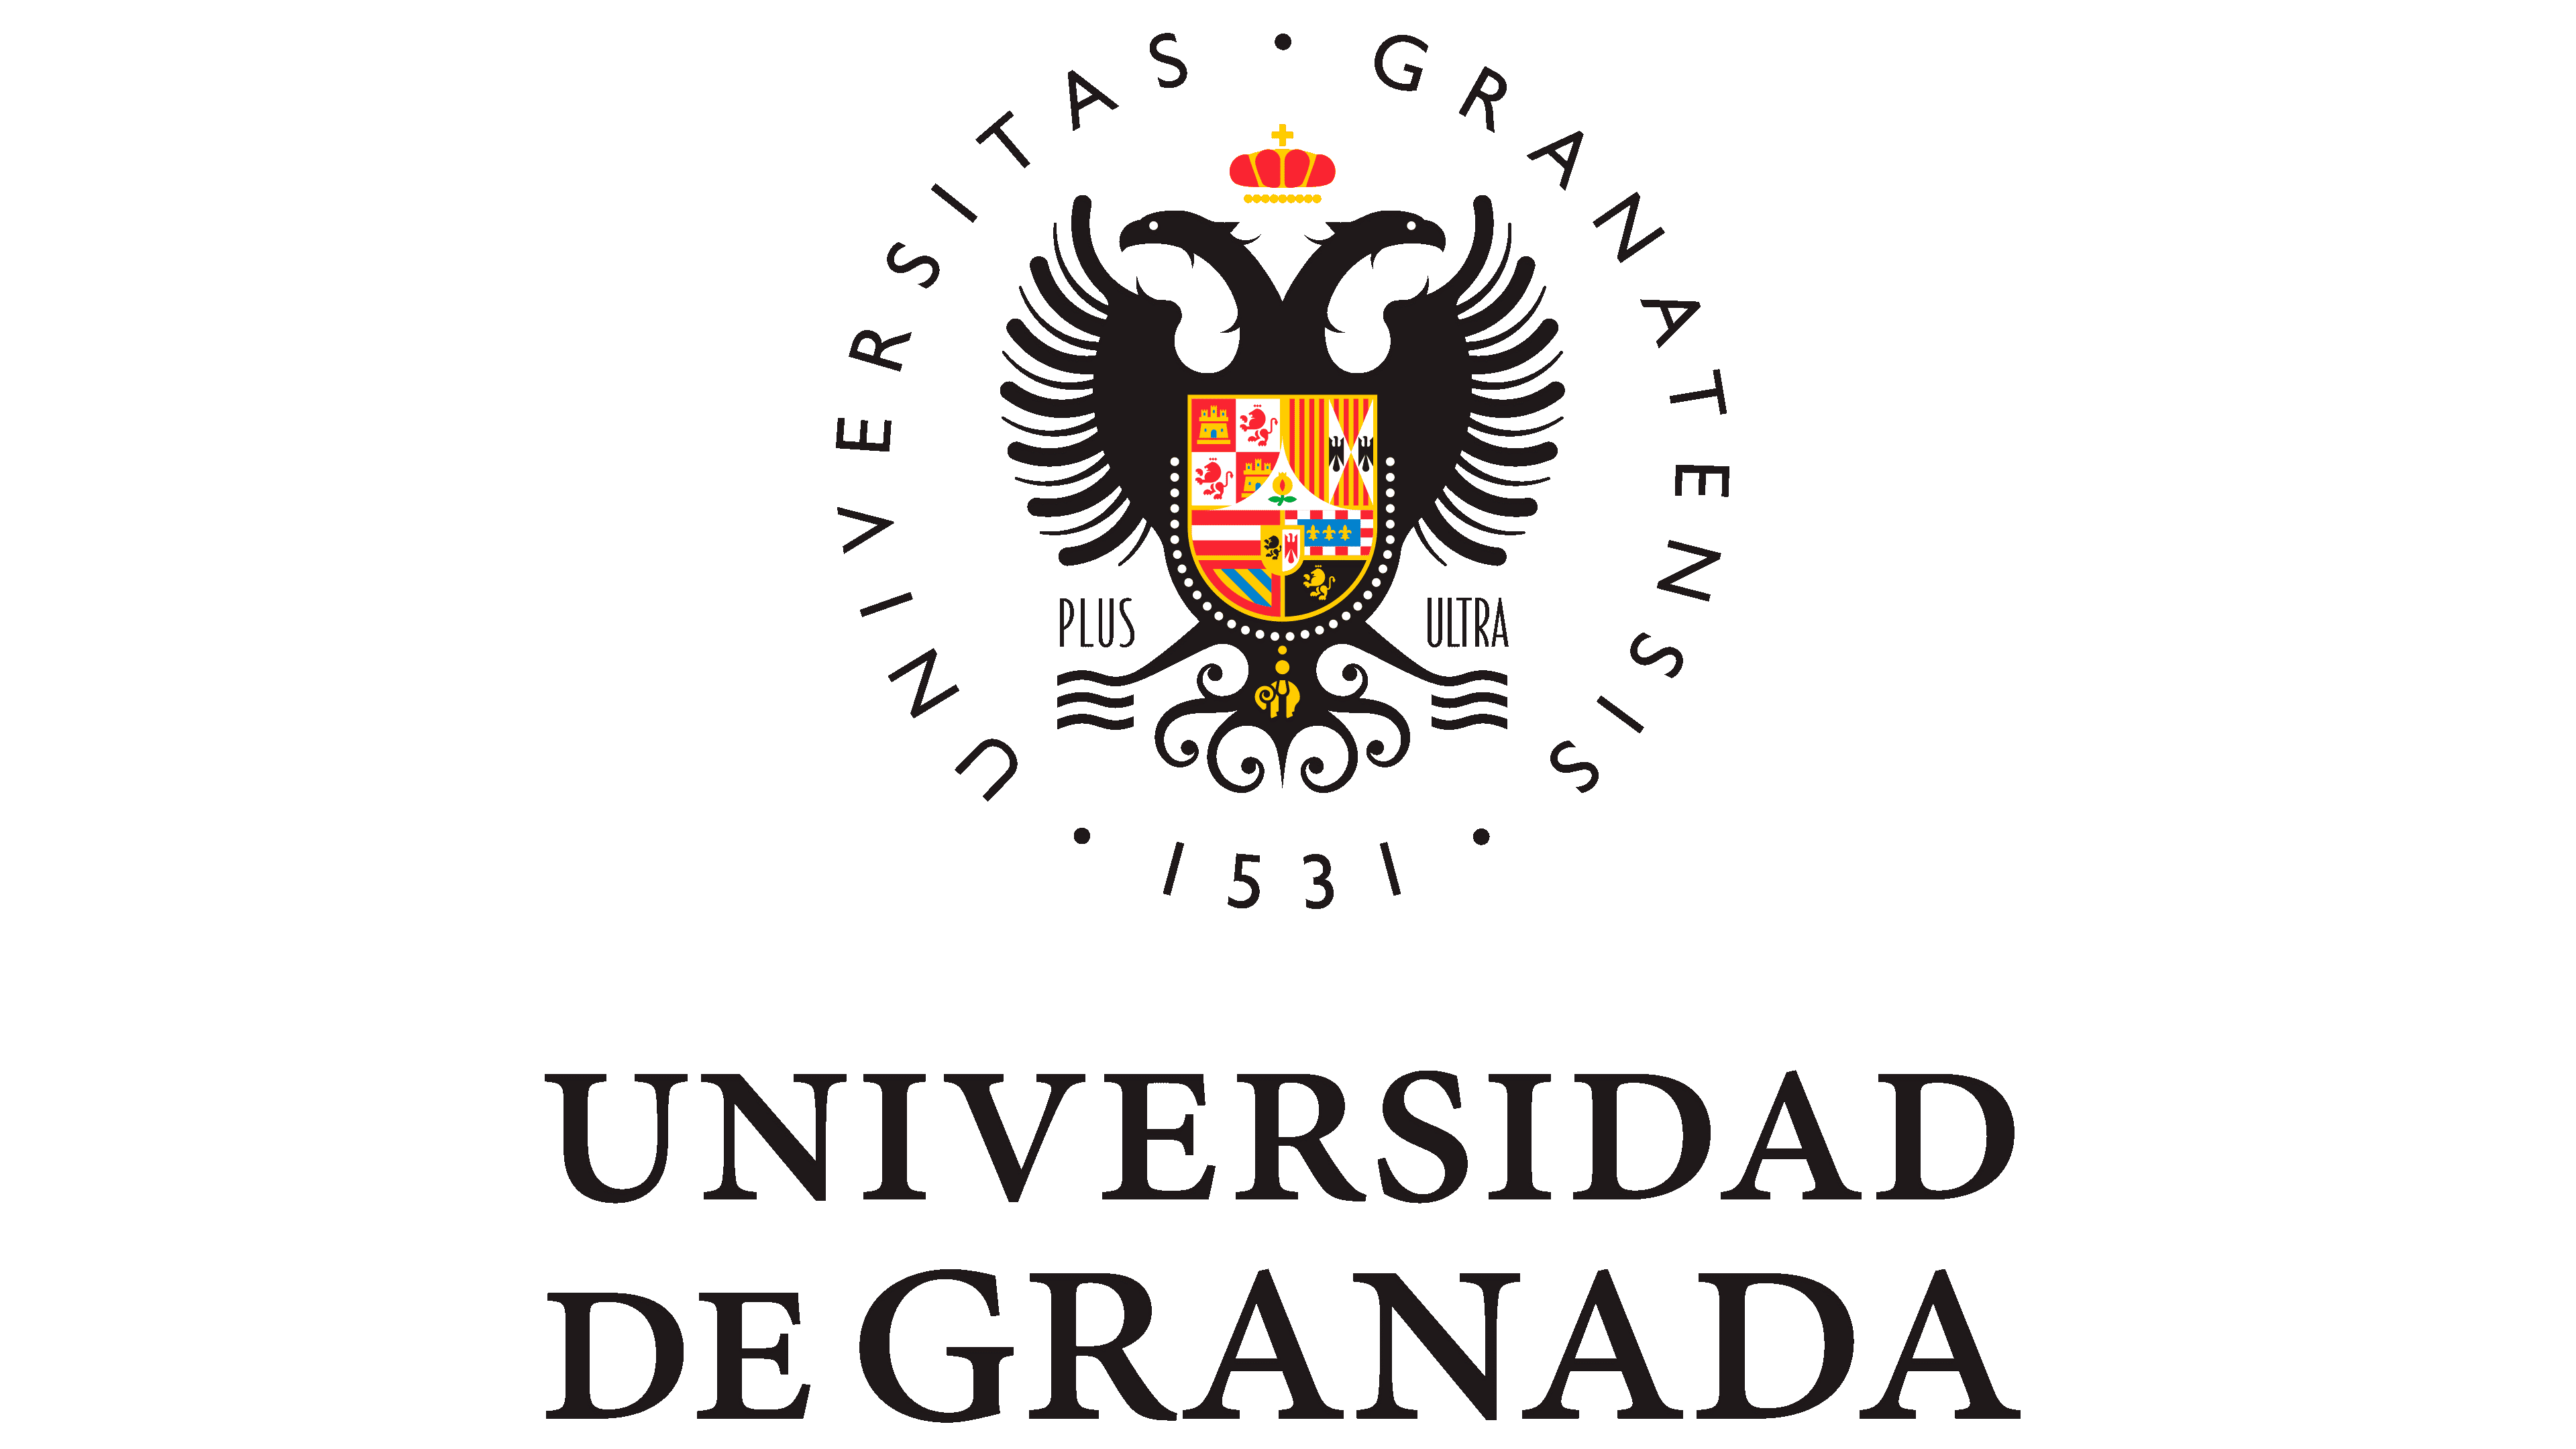 Hapet thirrja për aplikim për staf akademik për mësimdhënie në Universitetin e Granadës, Spanjë, në kuadër të Programit Erasmus+, për semestrin e dytë të vitit akademik 2023-2024